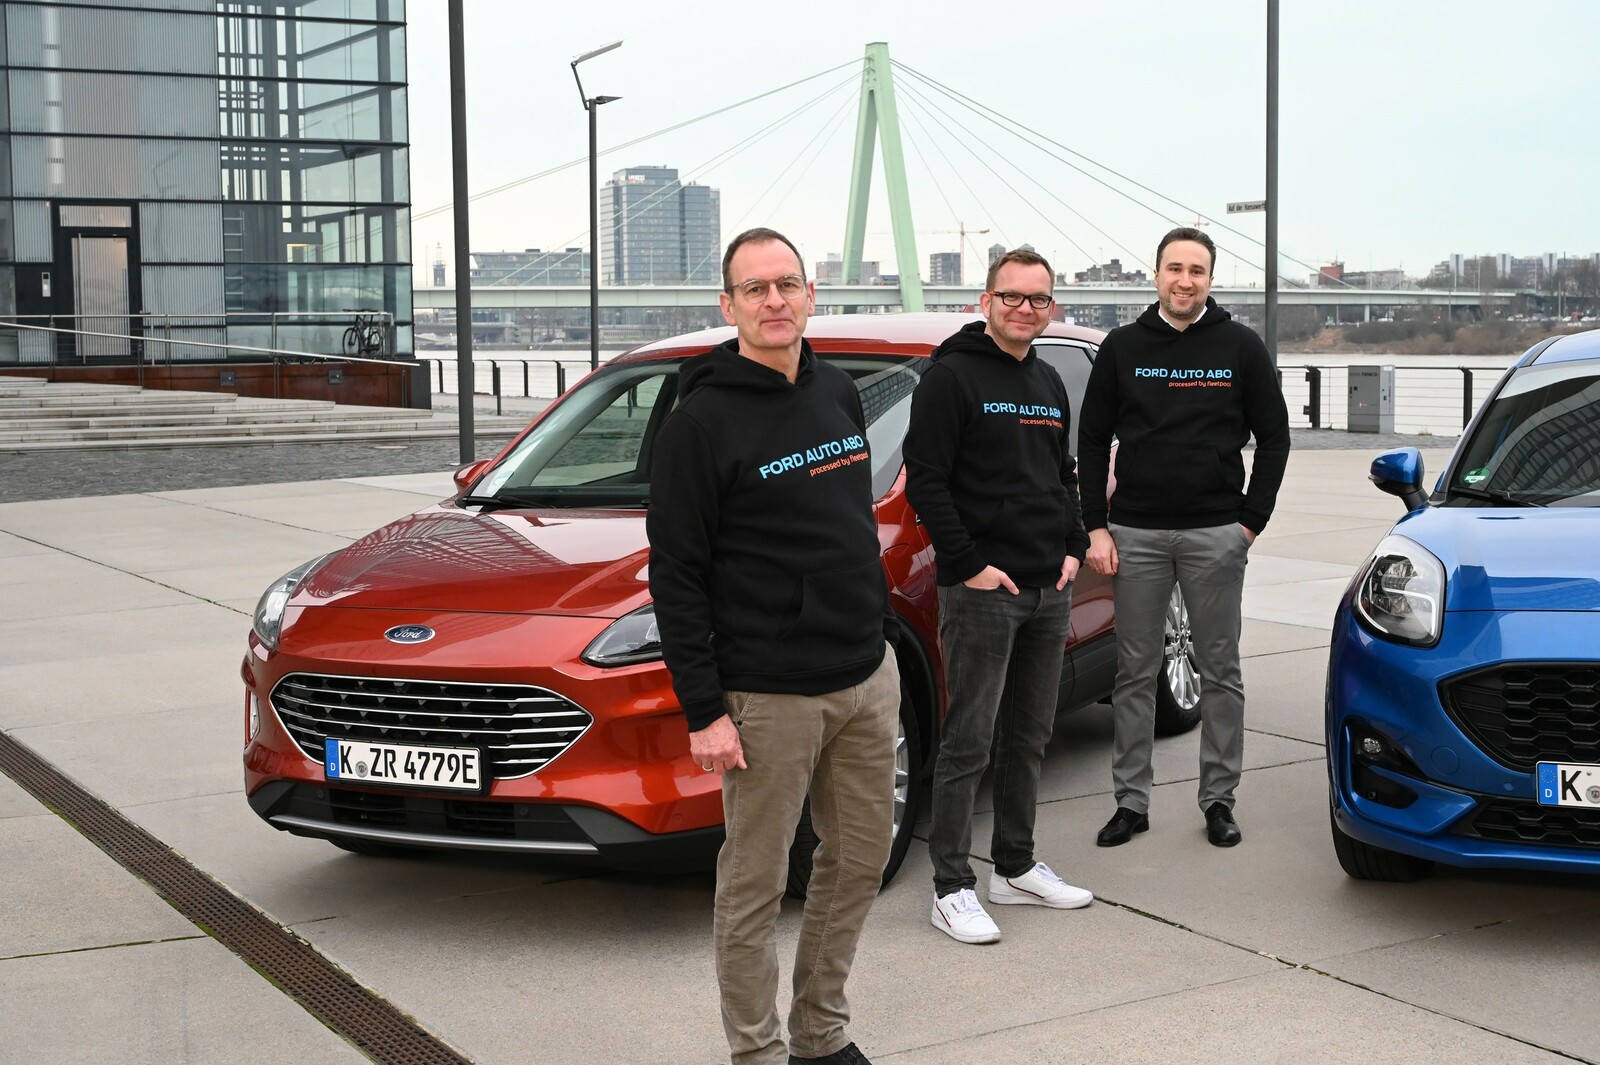 Gemeinsam unterwegs in Sachen Autoabo (v.l.): Stefan Wieber (Ford), Alexander Kaiser (Fleetpool) und Fabio Krause (Ford-Partnerverband).